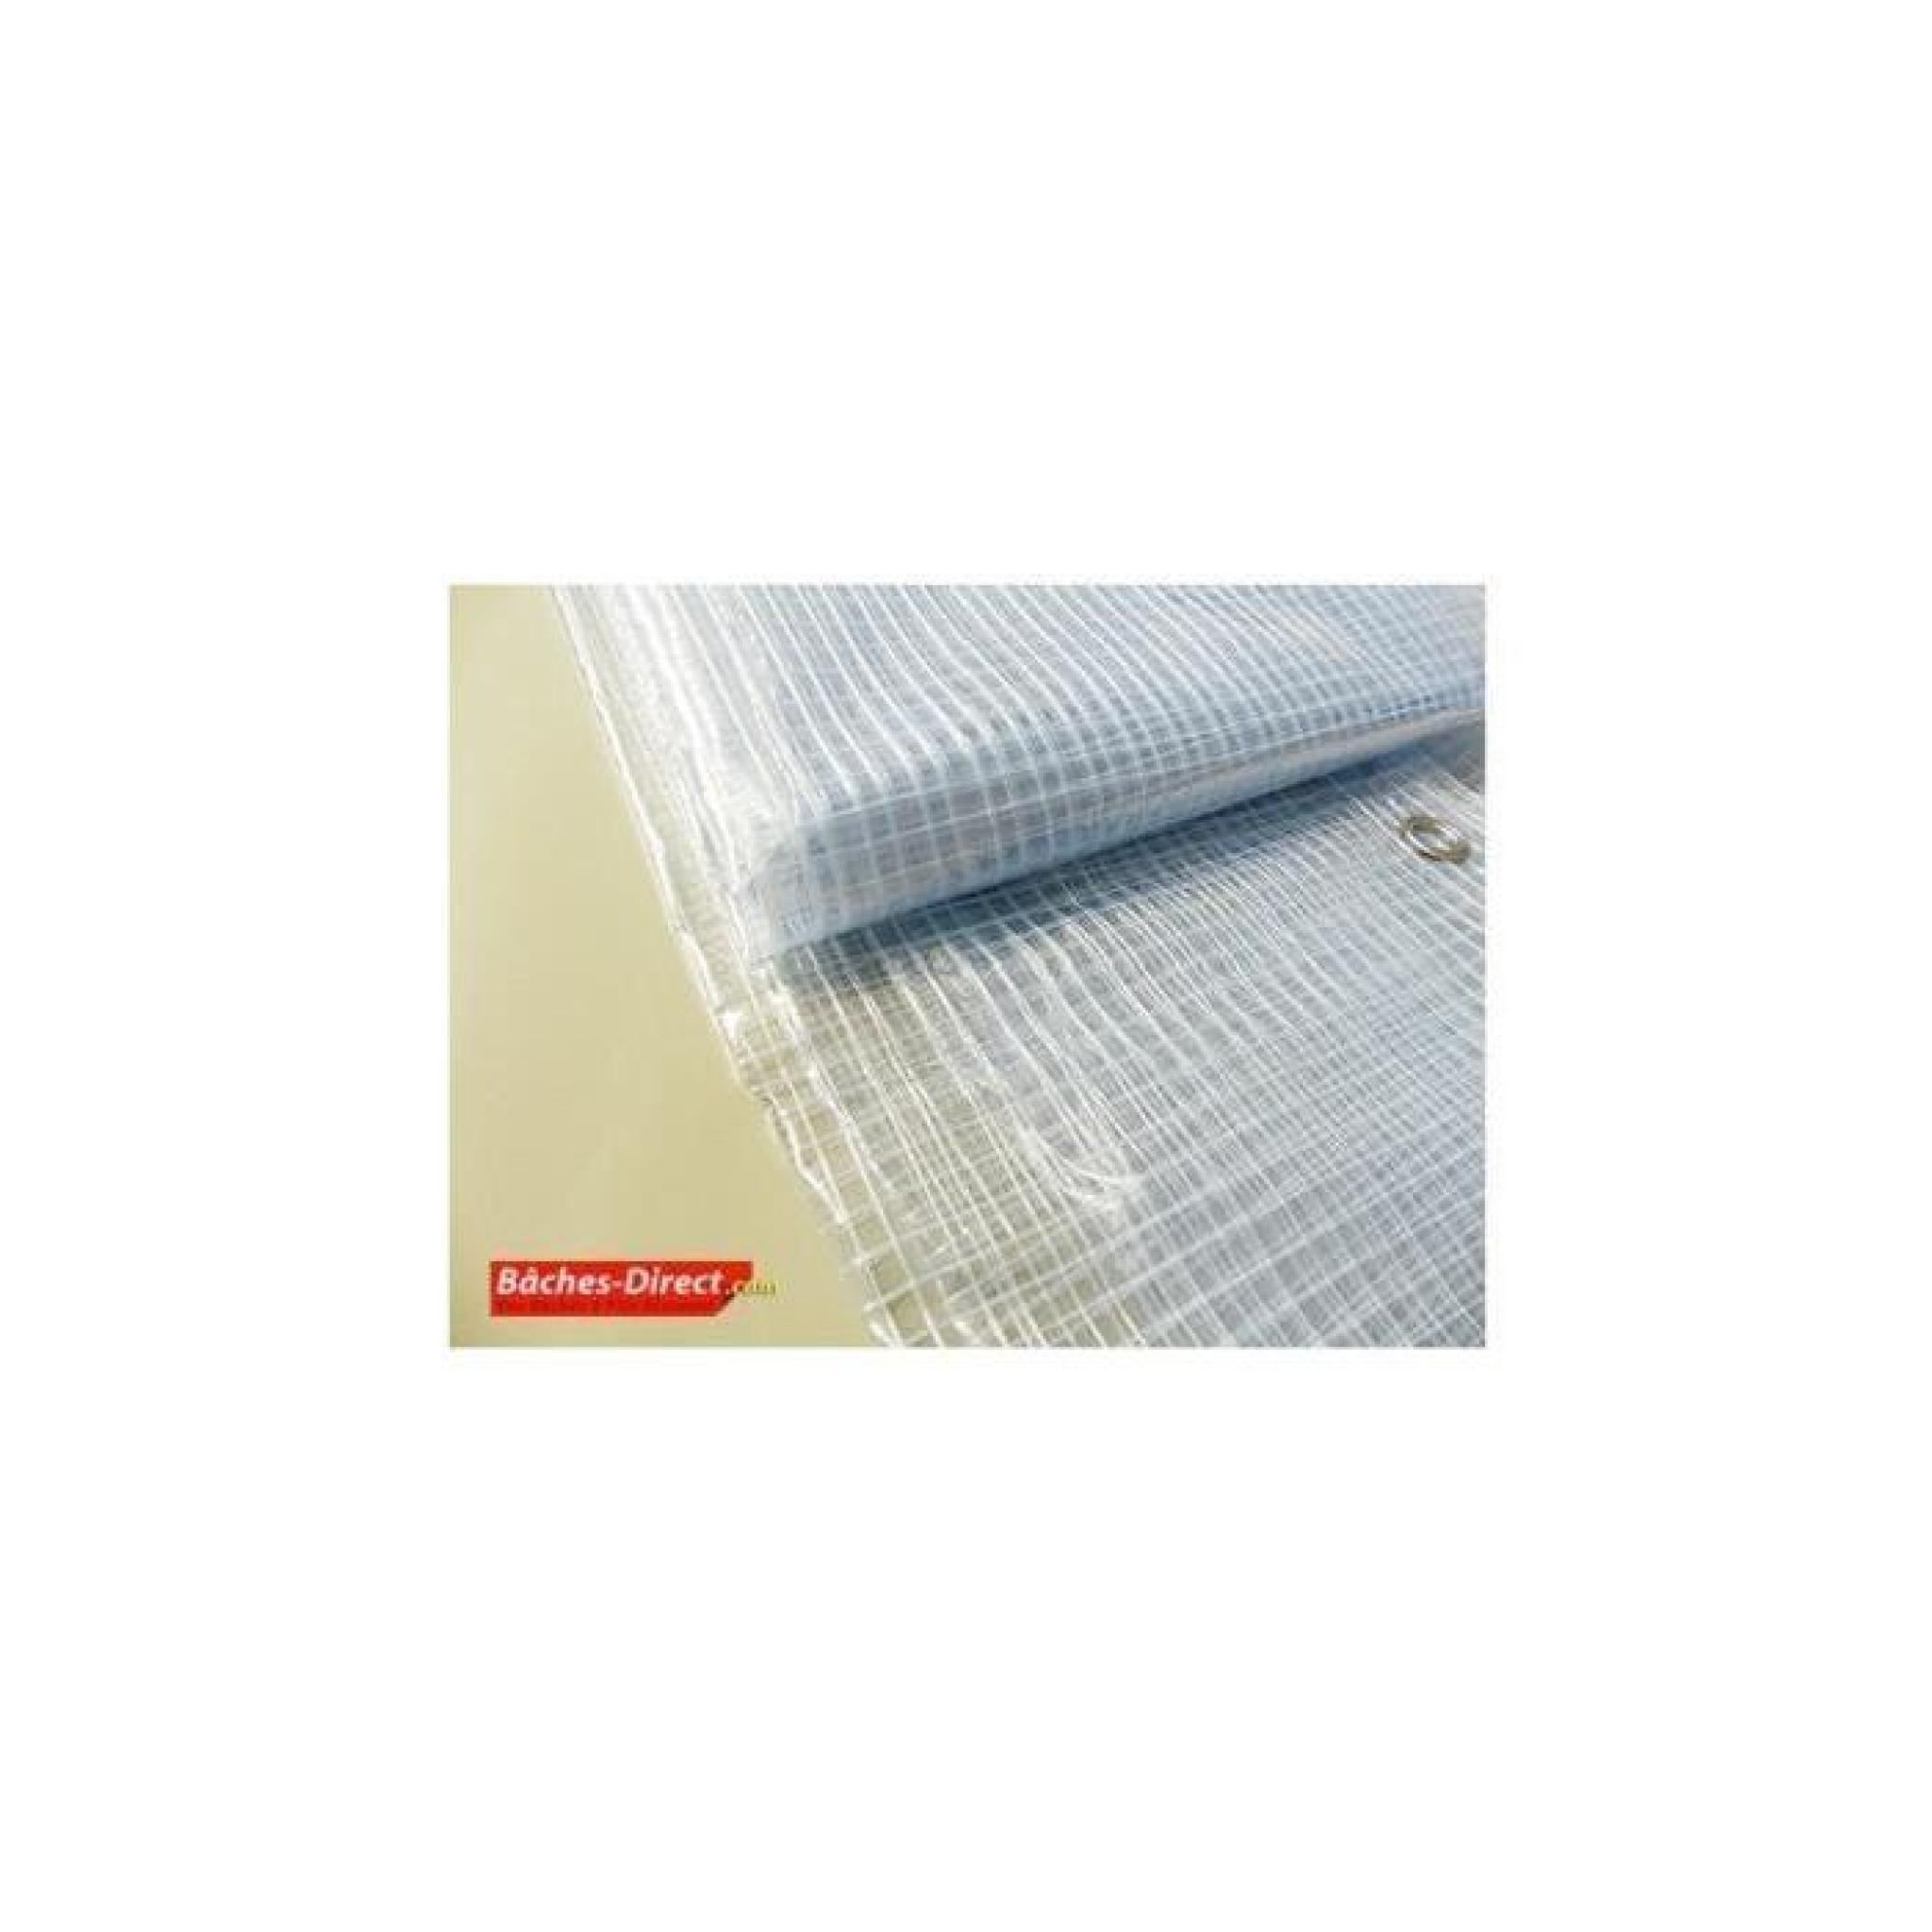 BACHES DIRECT - Bâche Pergola 400 g/m² - 3.8 x 9 m - bache transparente pour toile de pergola - bache imperméable Transparente Armée pas cher